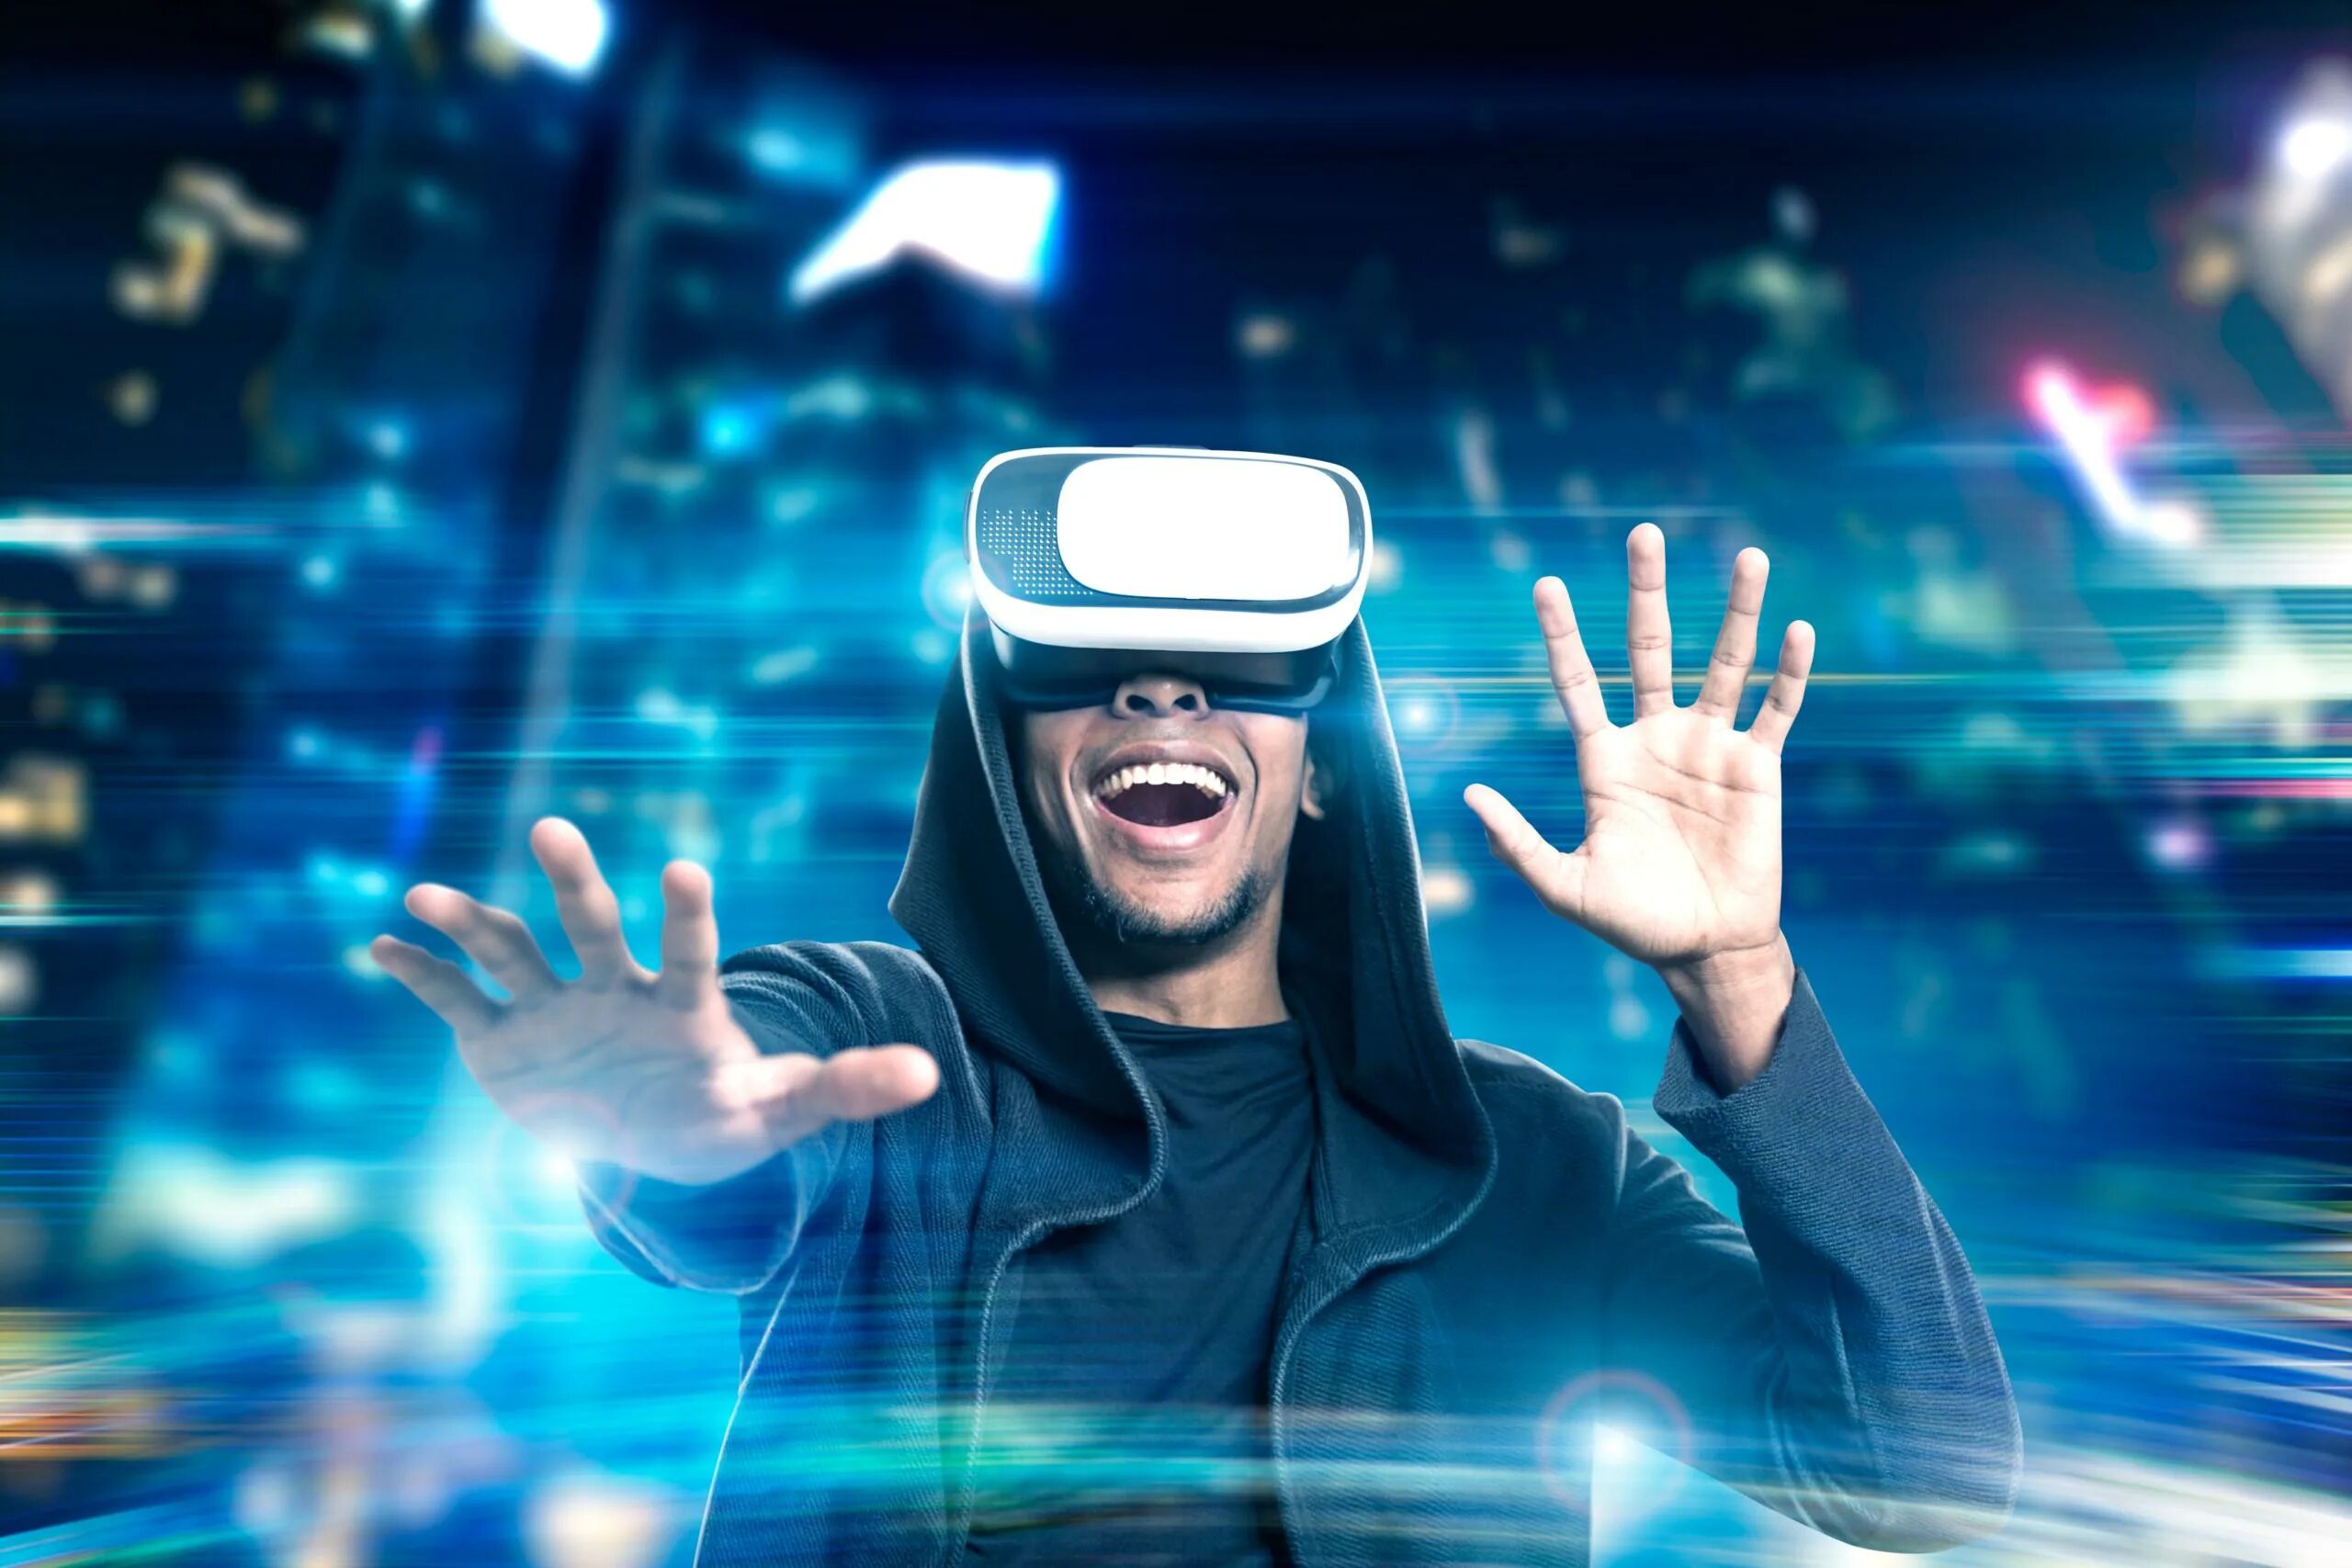 В новом виртуальном мире. Визуальная реальность. VR виртуальная реальность. Виртуальнаяяреальность. Человек в виртуальной реальности.